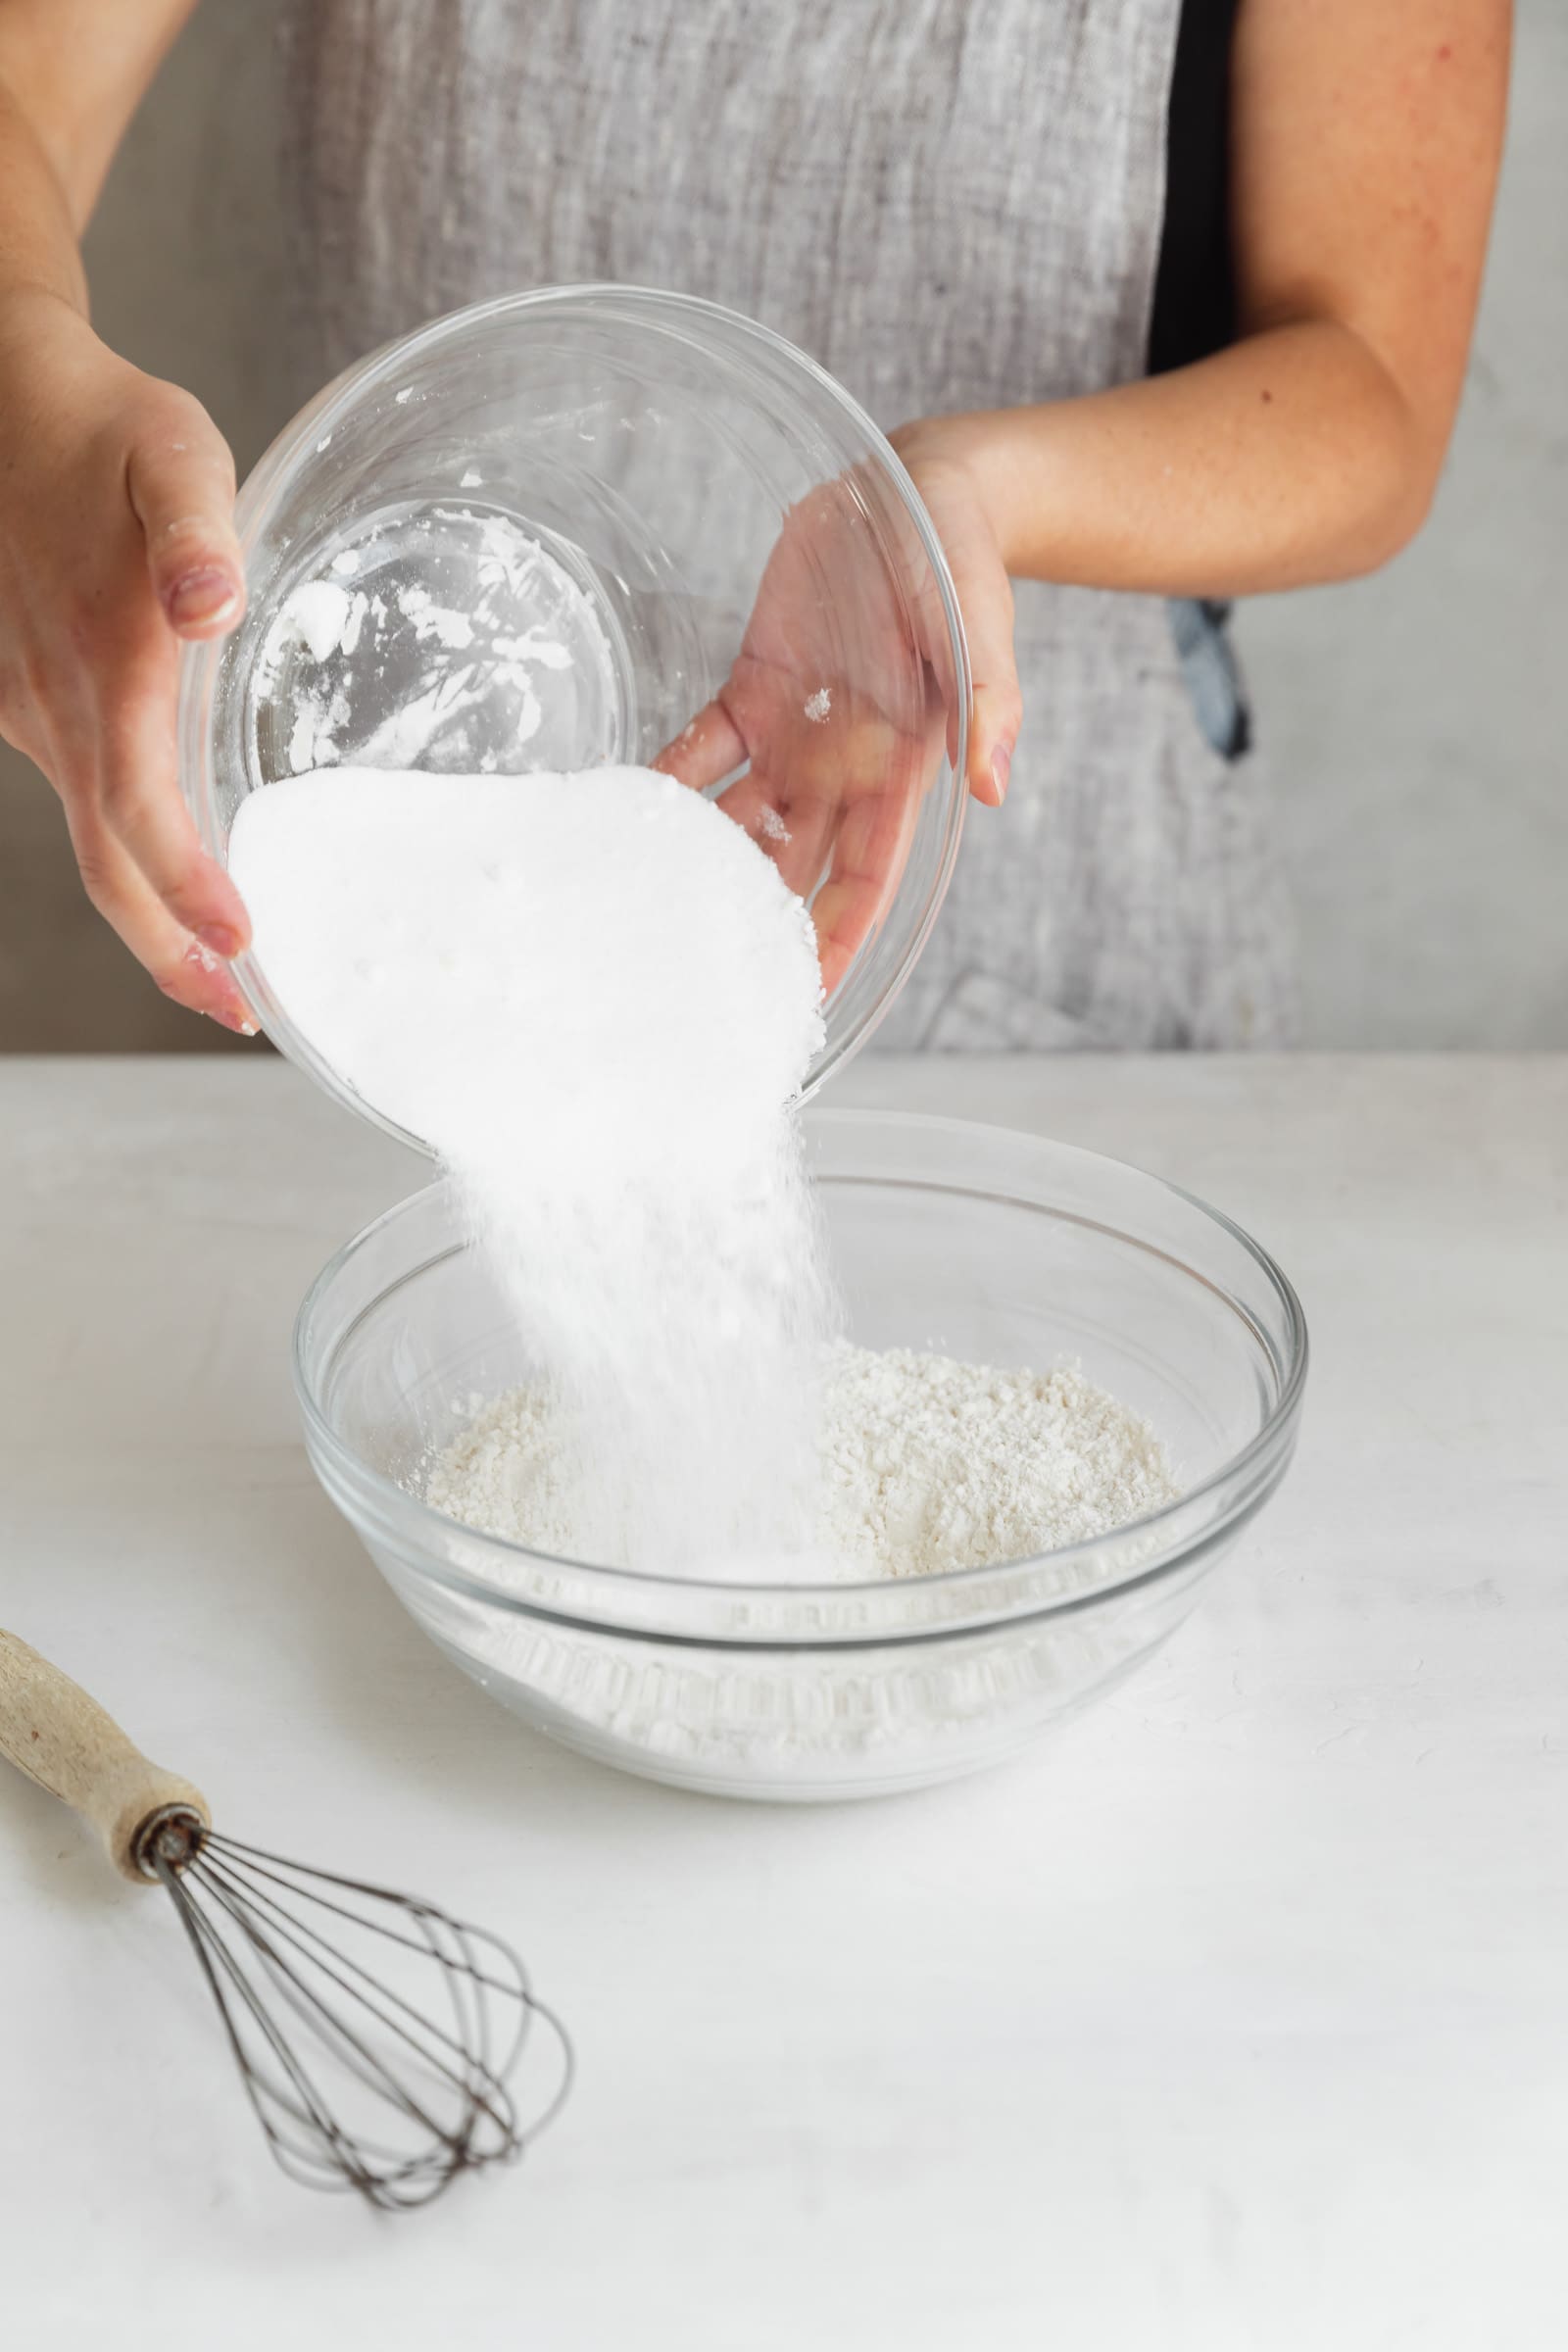 sugar going into a bowl